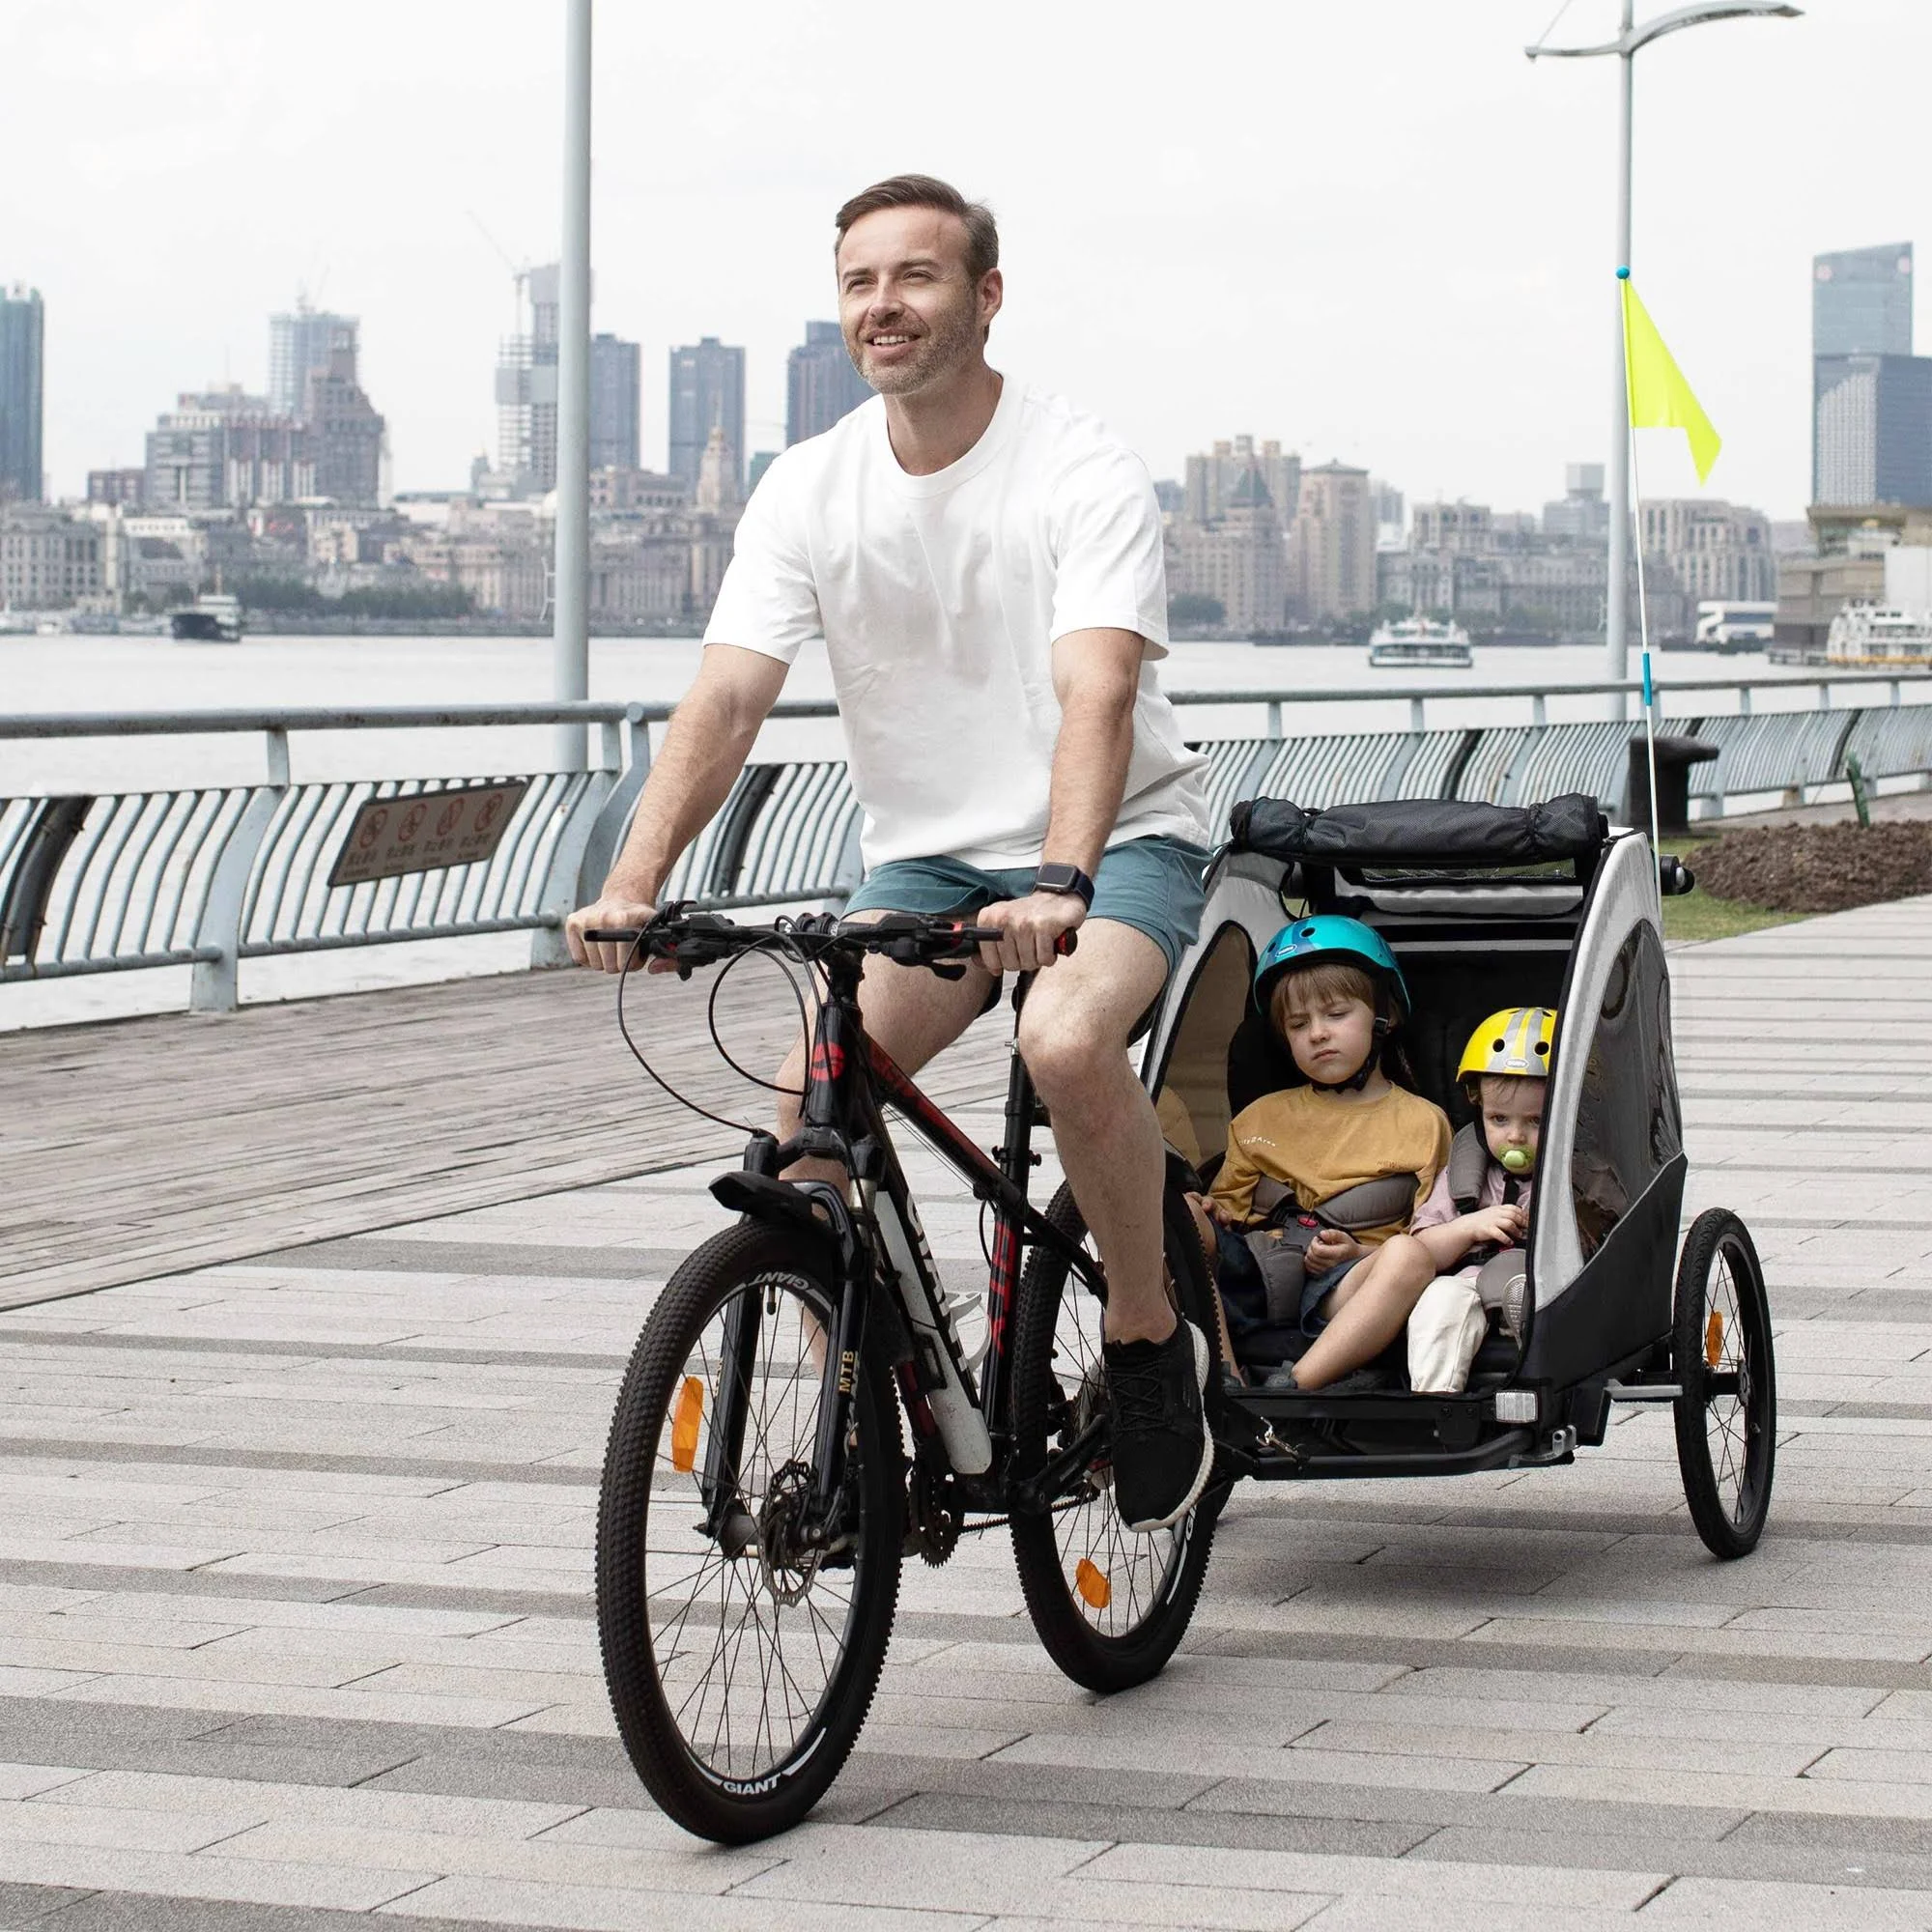 Aosom Child Bike Trailer 3 in1 Foldable Jogger Stroller Baby Stroller Transport Carrier with Shock Absorber System Rubber Tires Adjustable Handlebar